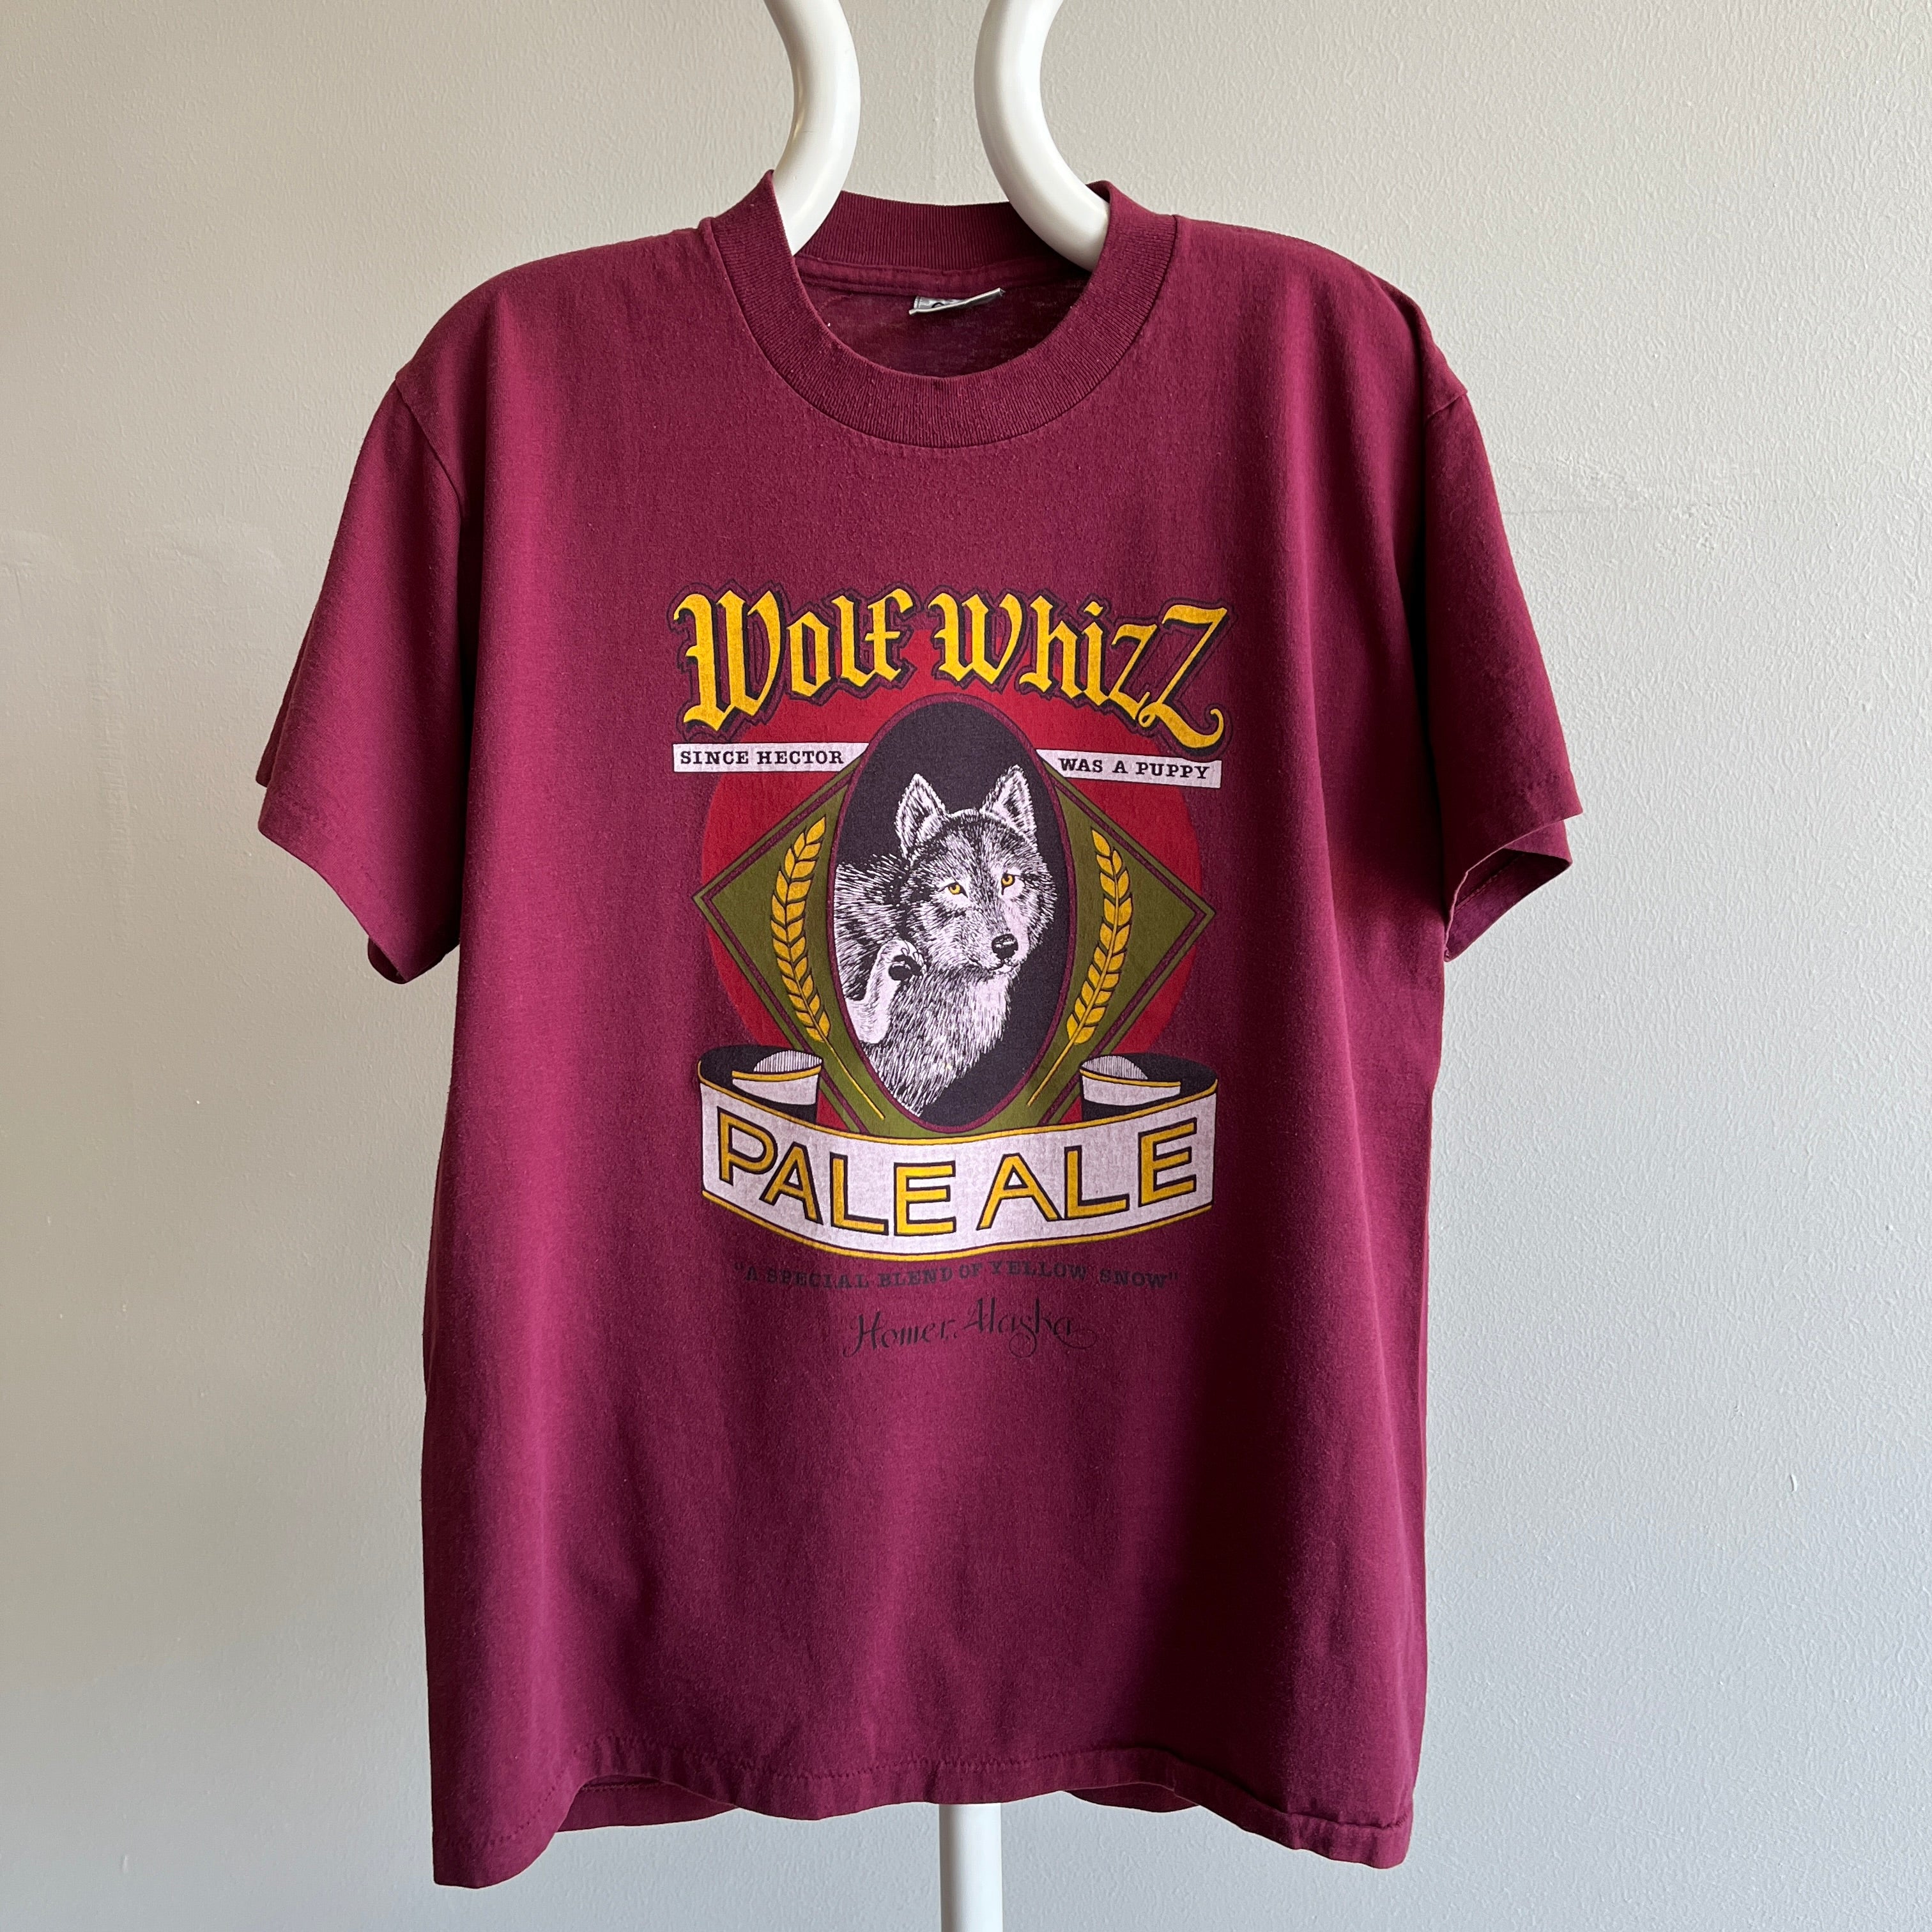 T-shirt des années 1990 (blague de papa) Wolf Whiz Pale Ale Homer, Alaska